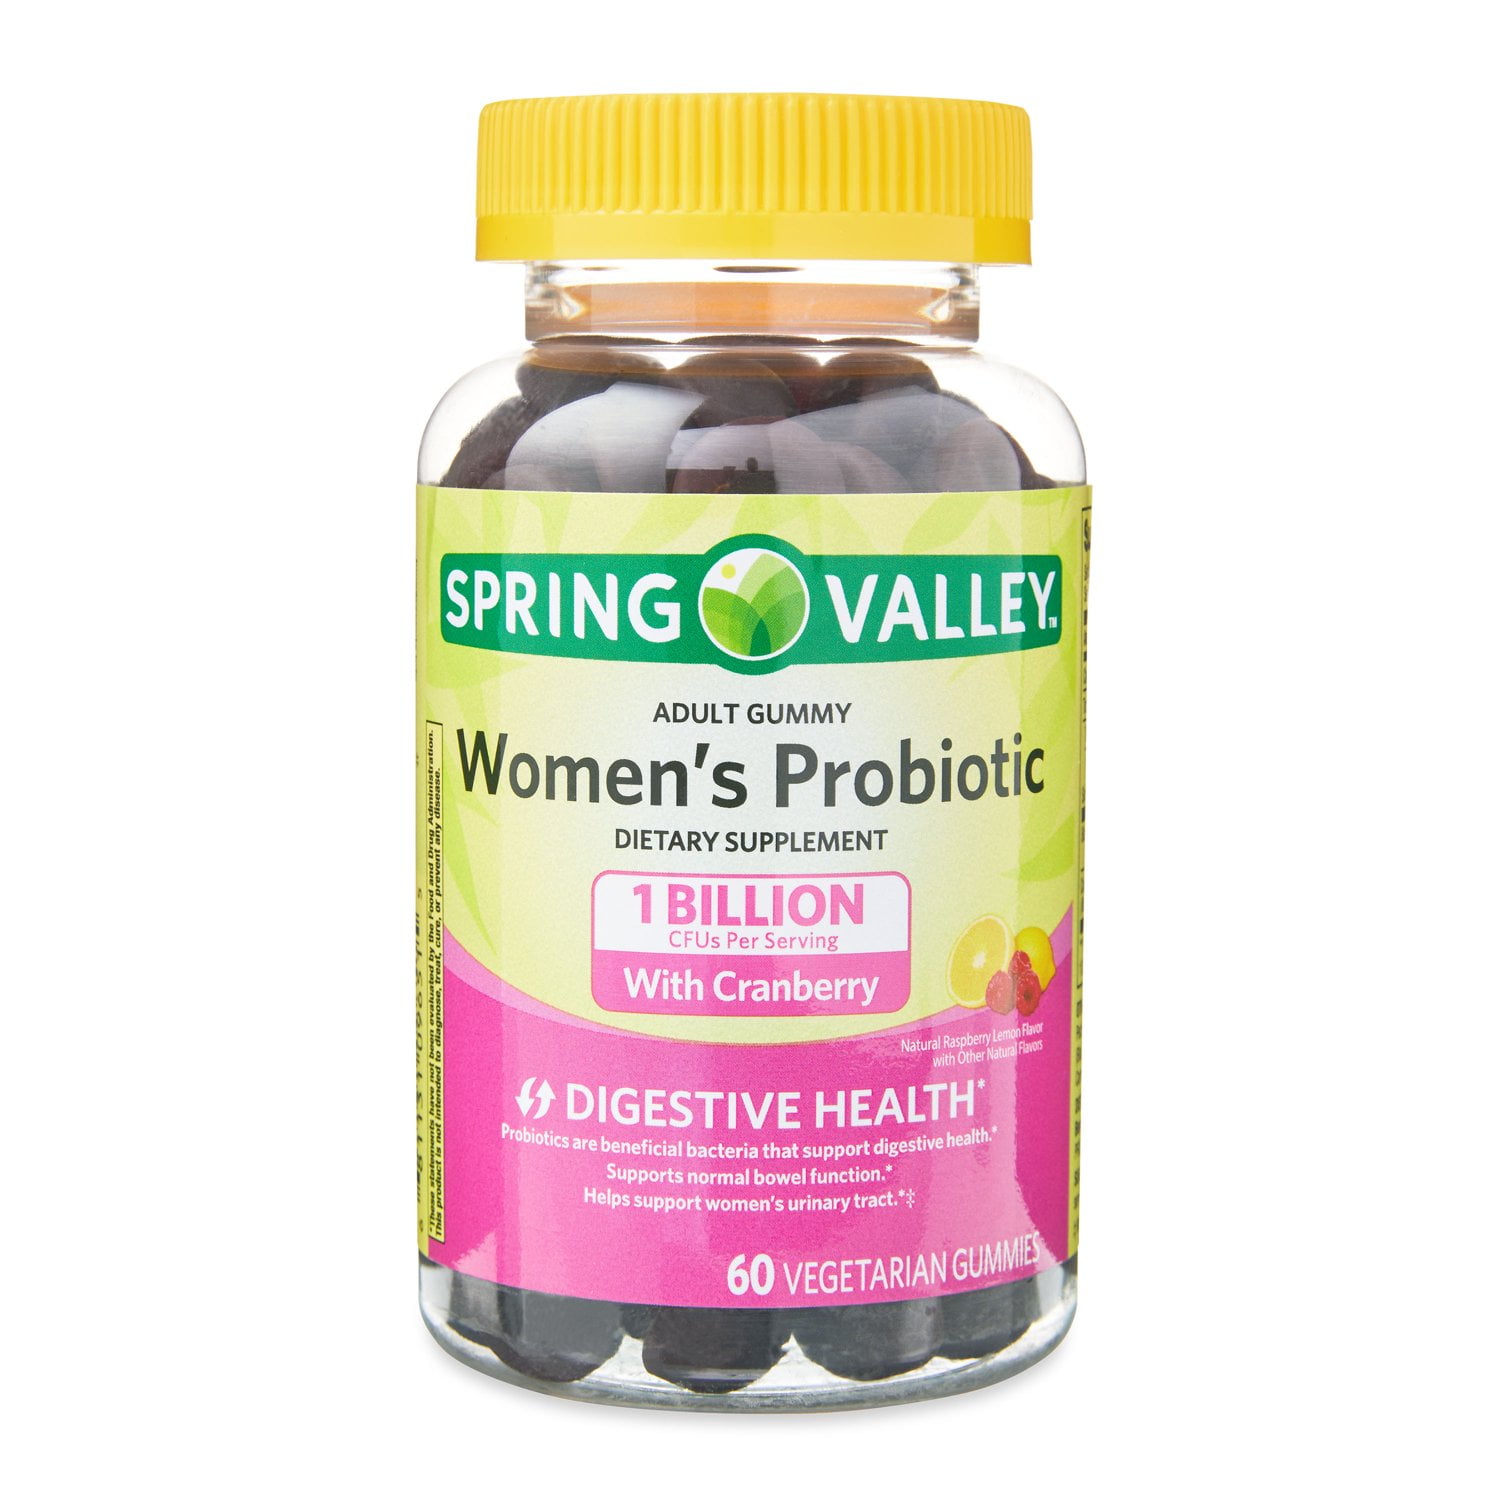 Spring Valley Women's Probiotic Vegetarian Gummy Supplement, 60 Count